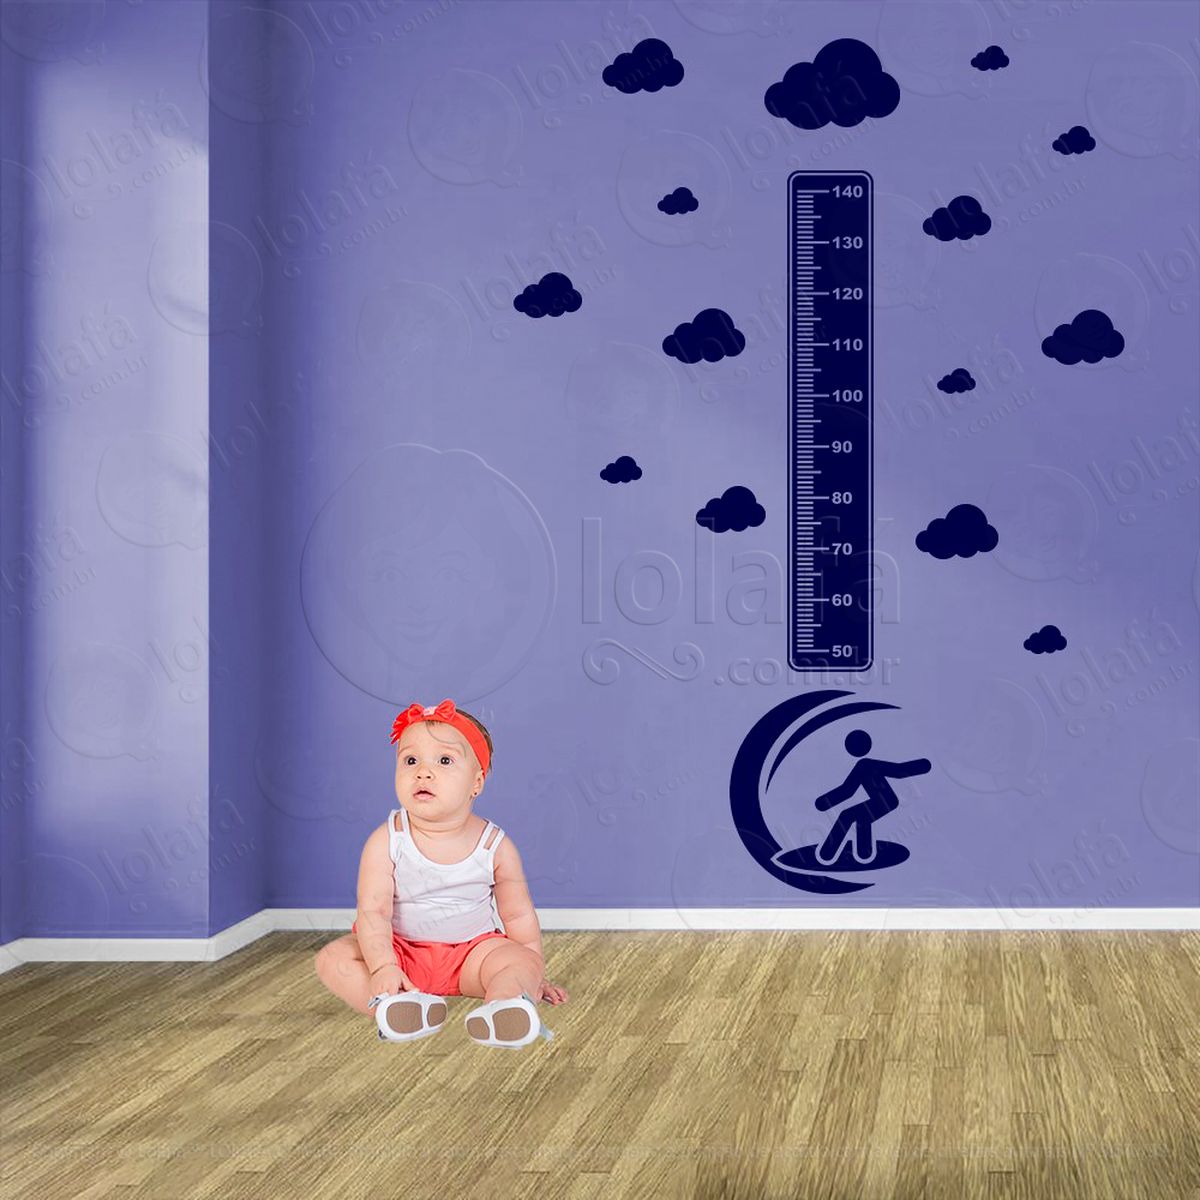 surf e nuvens adesivo régua de crescimento infantil, medidor de altura para quarto, porta e parede - mod:457